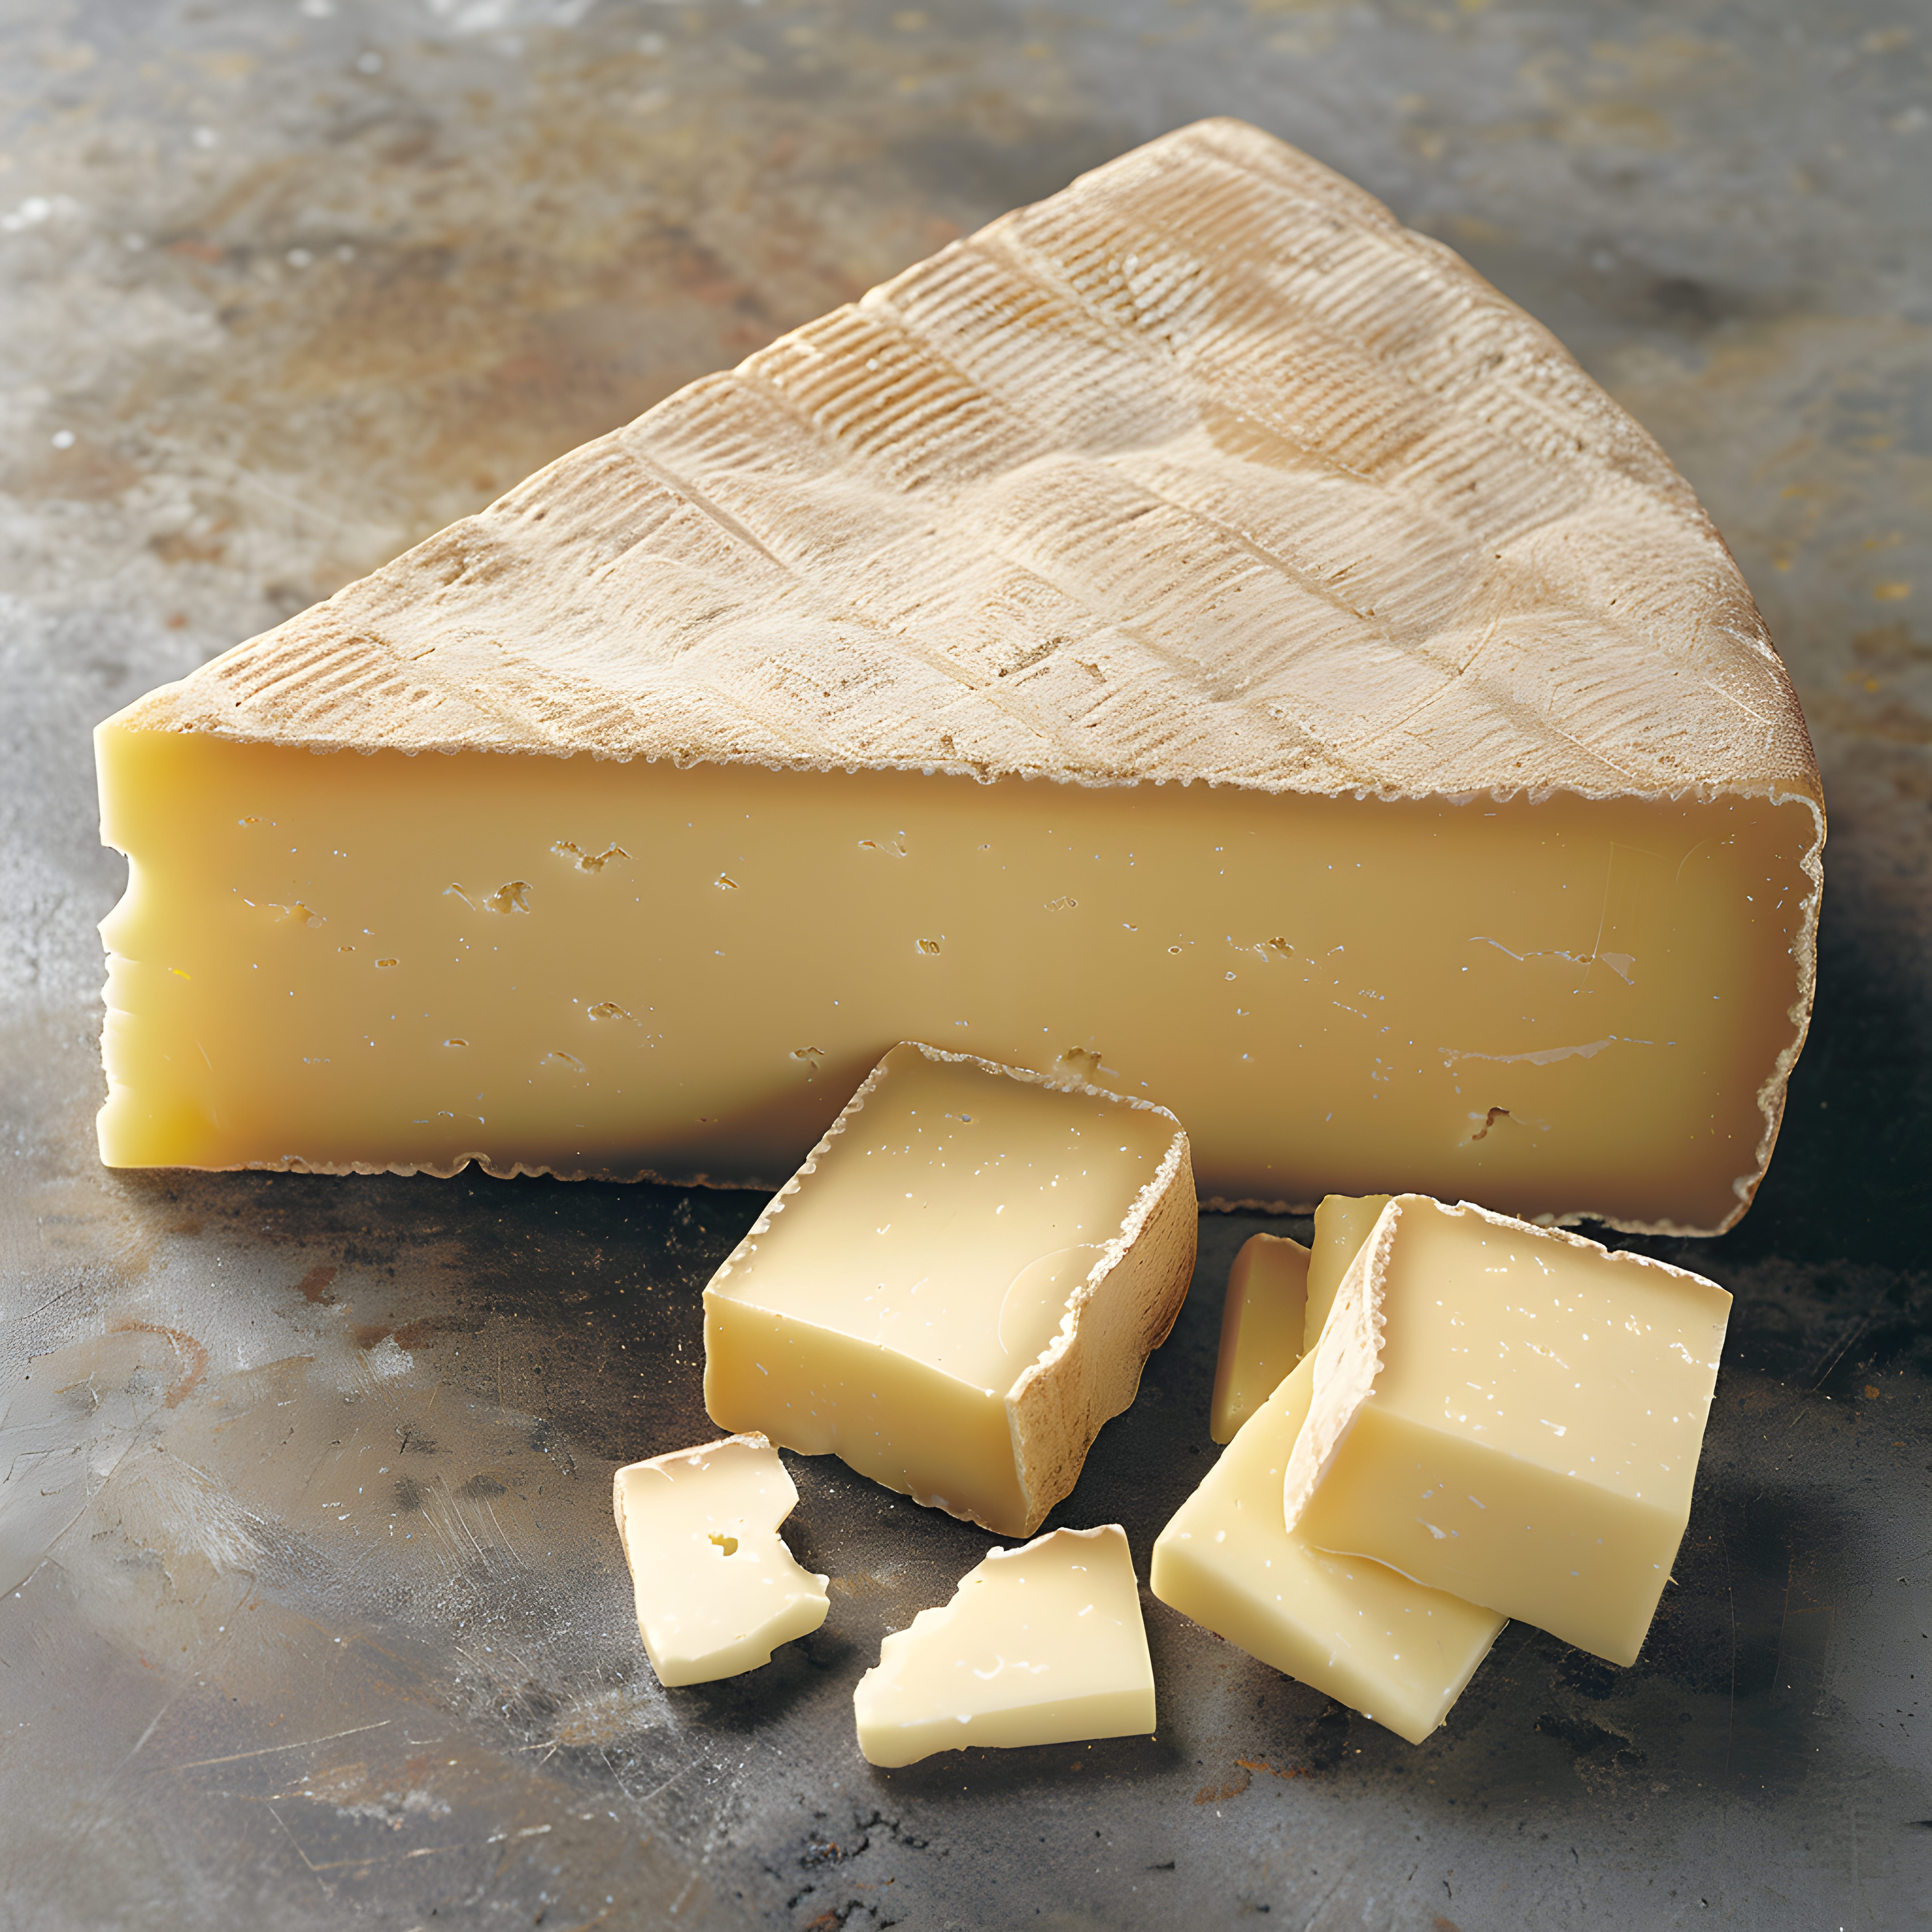 Alpský styl sýra s mytou kůrou